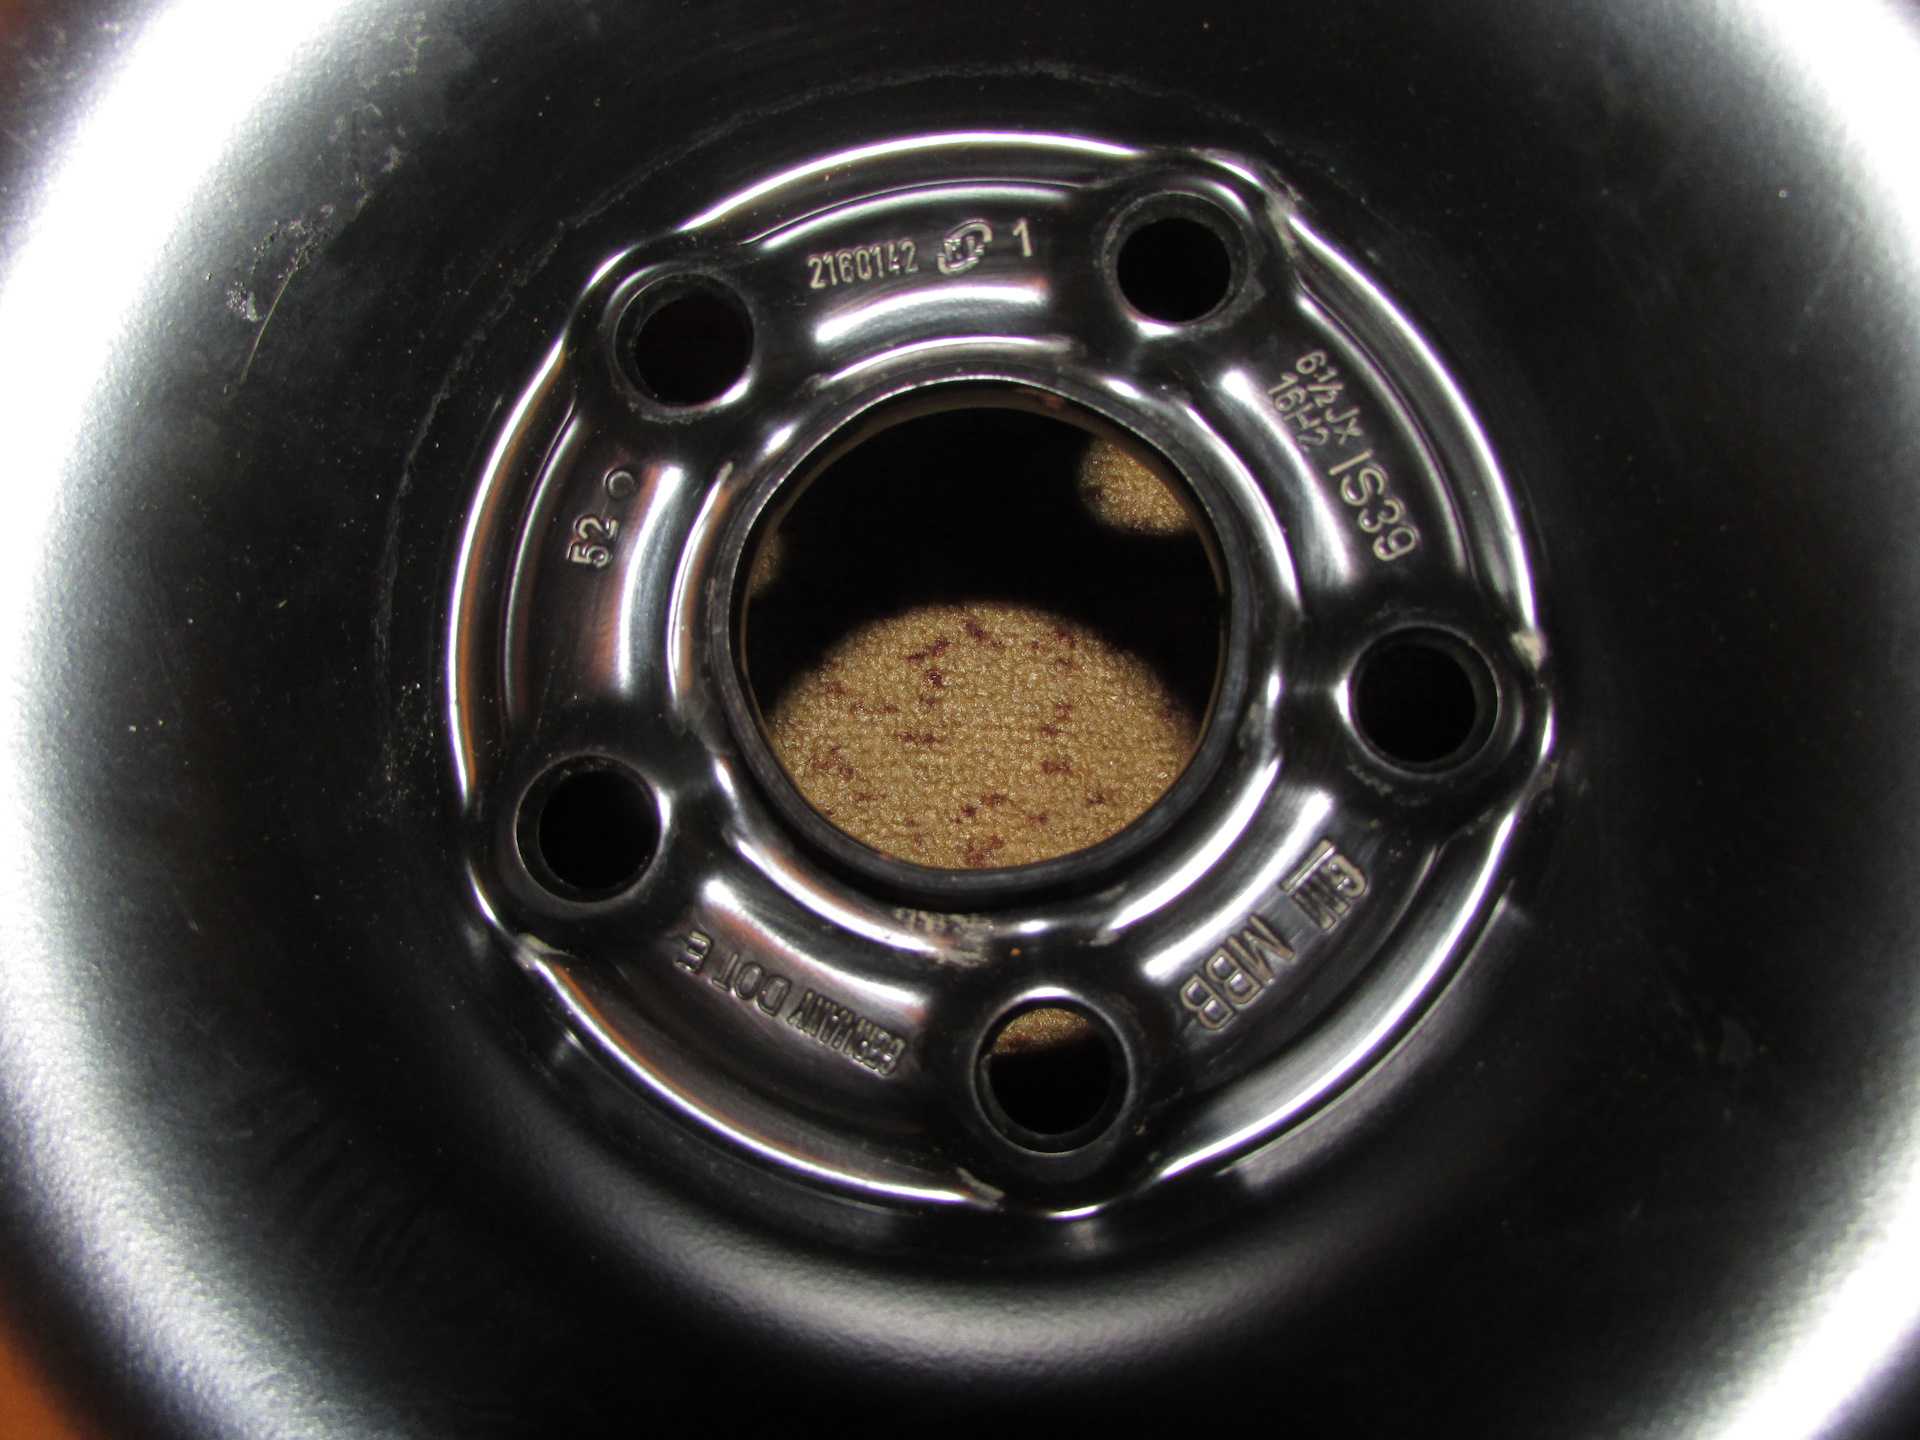 Chevrolet cruze 2012: размер дисков и колёс, разболтовка, давление в шинах, вылет диска, dia, pcd, сверловка, штатная резина и тюнинг